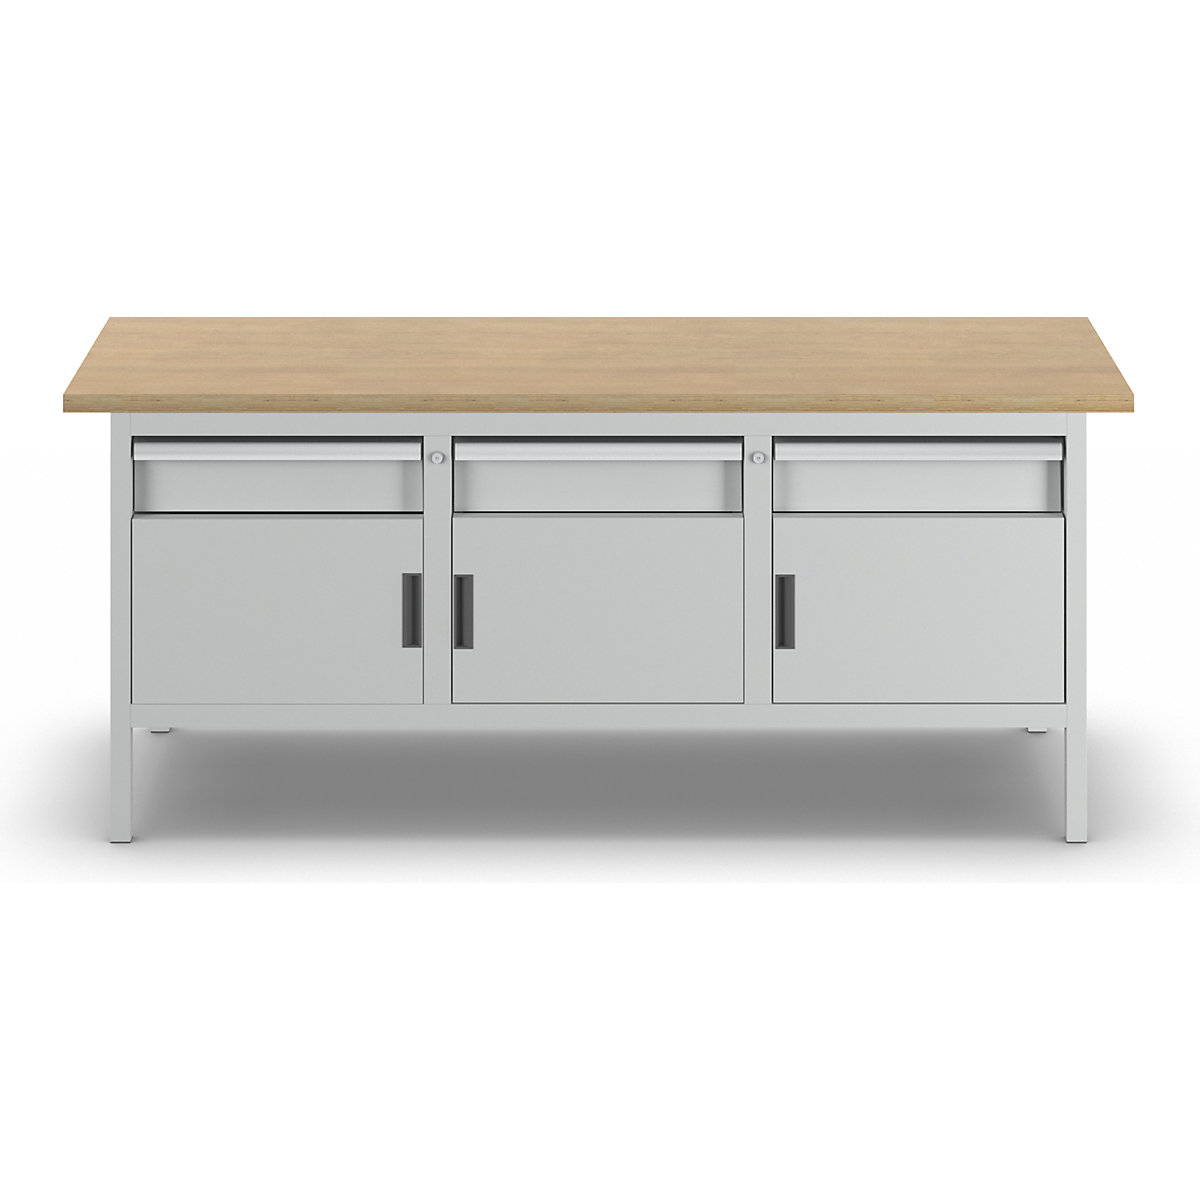 Stół warsztatowy z blatem z litego buku, konstrukcja ramowa – LISTA (Zdjęcie produktu 13)-12